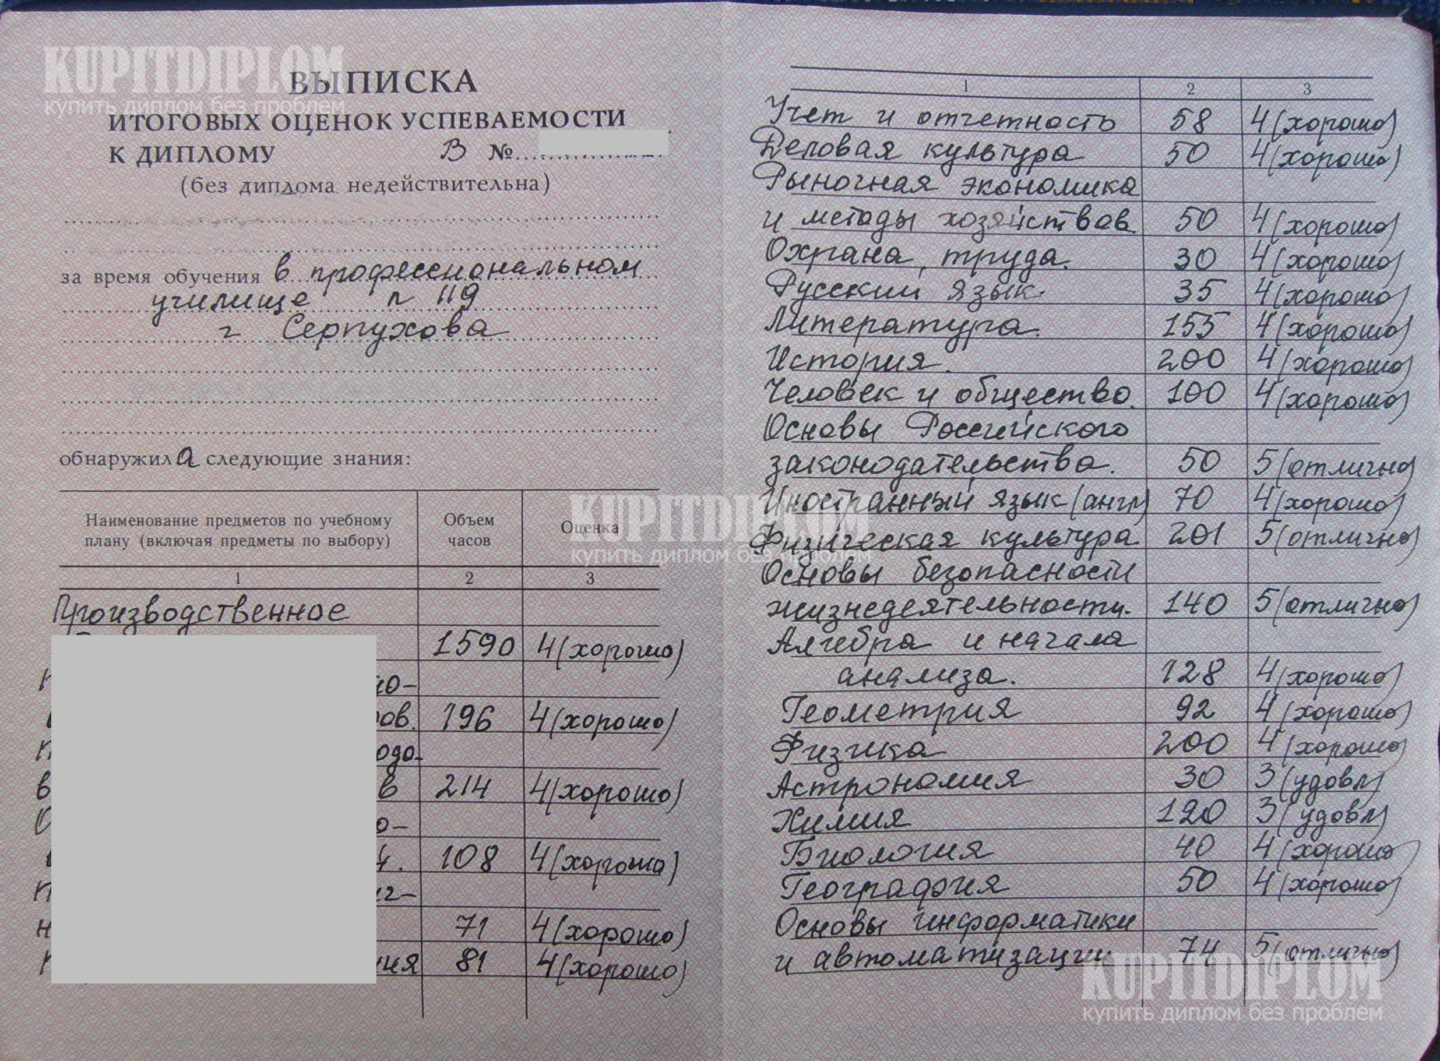 Предметы в приложении диплома ПТУ № 119 г. Серпухово Московской обл. 2001 года выдачи